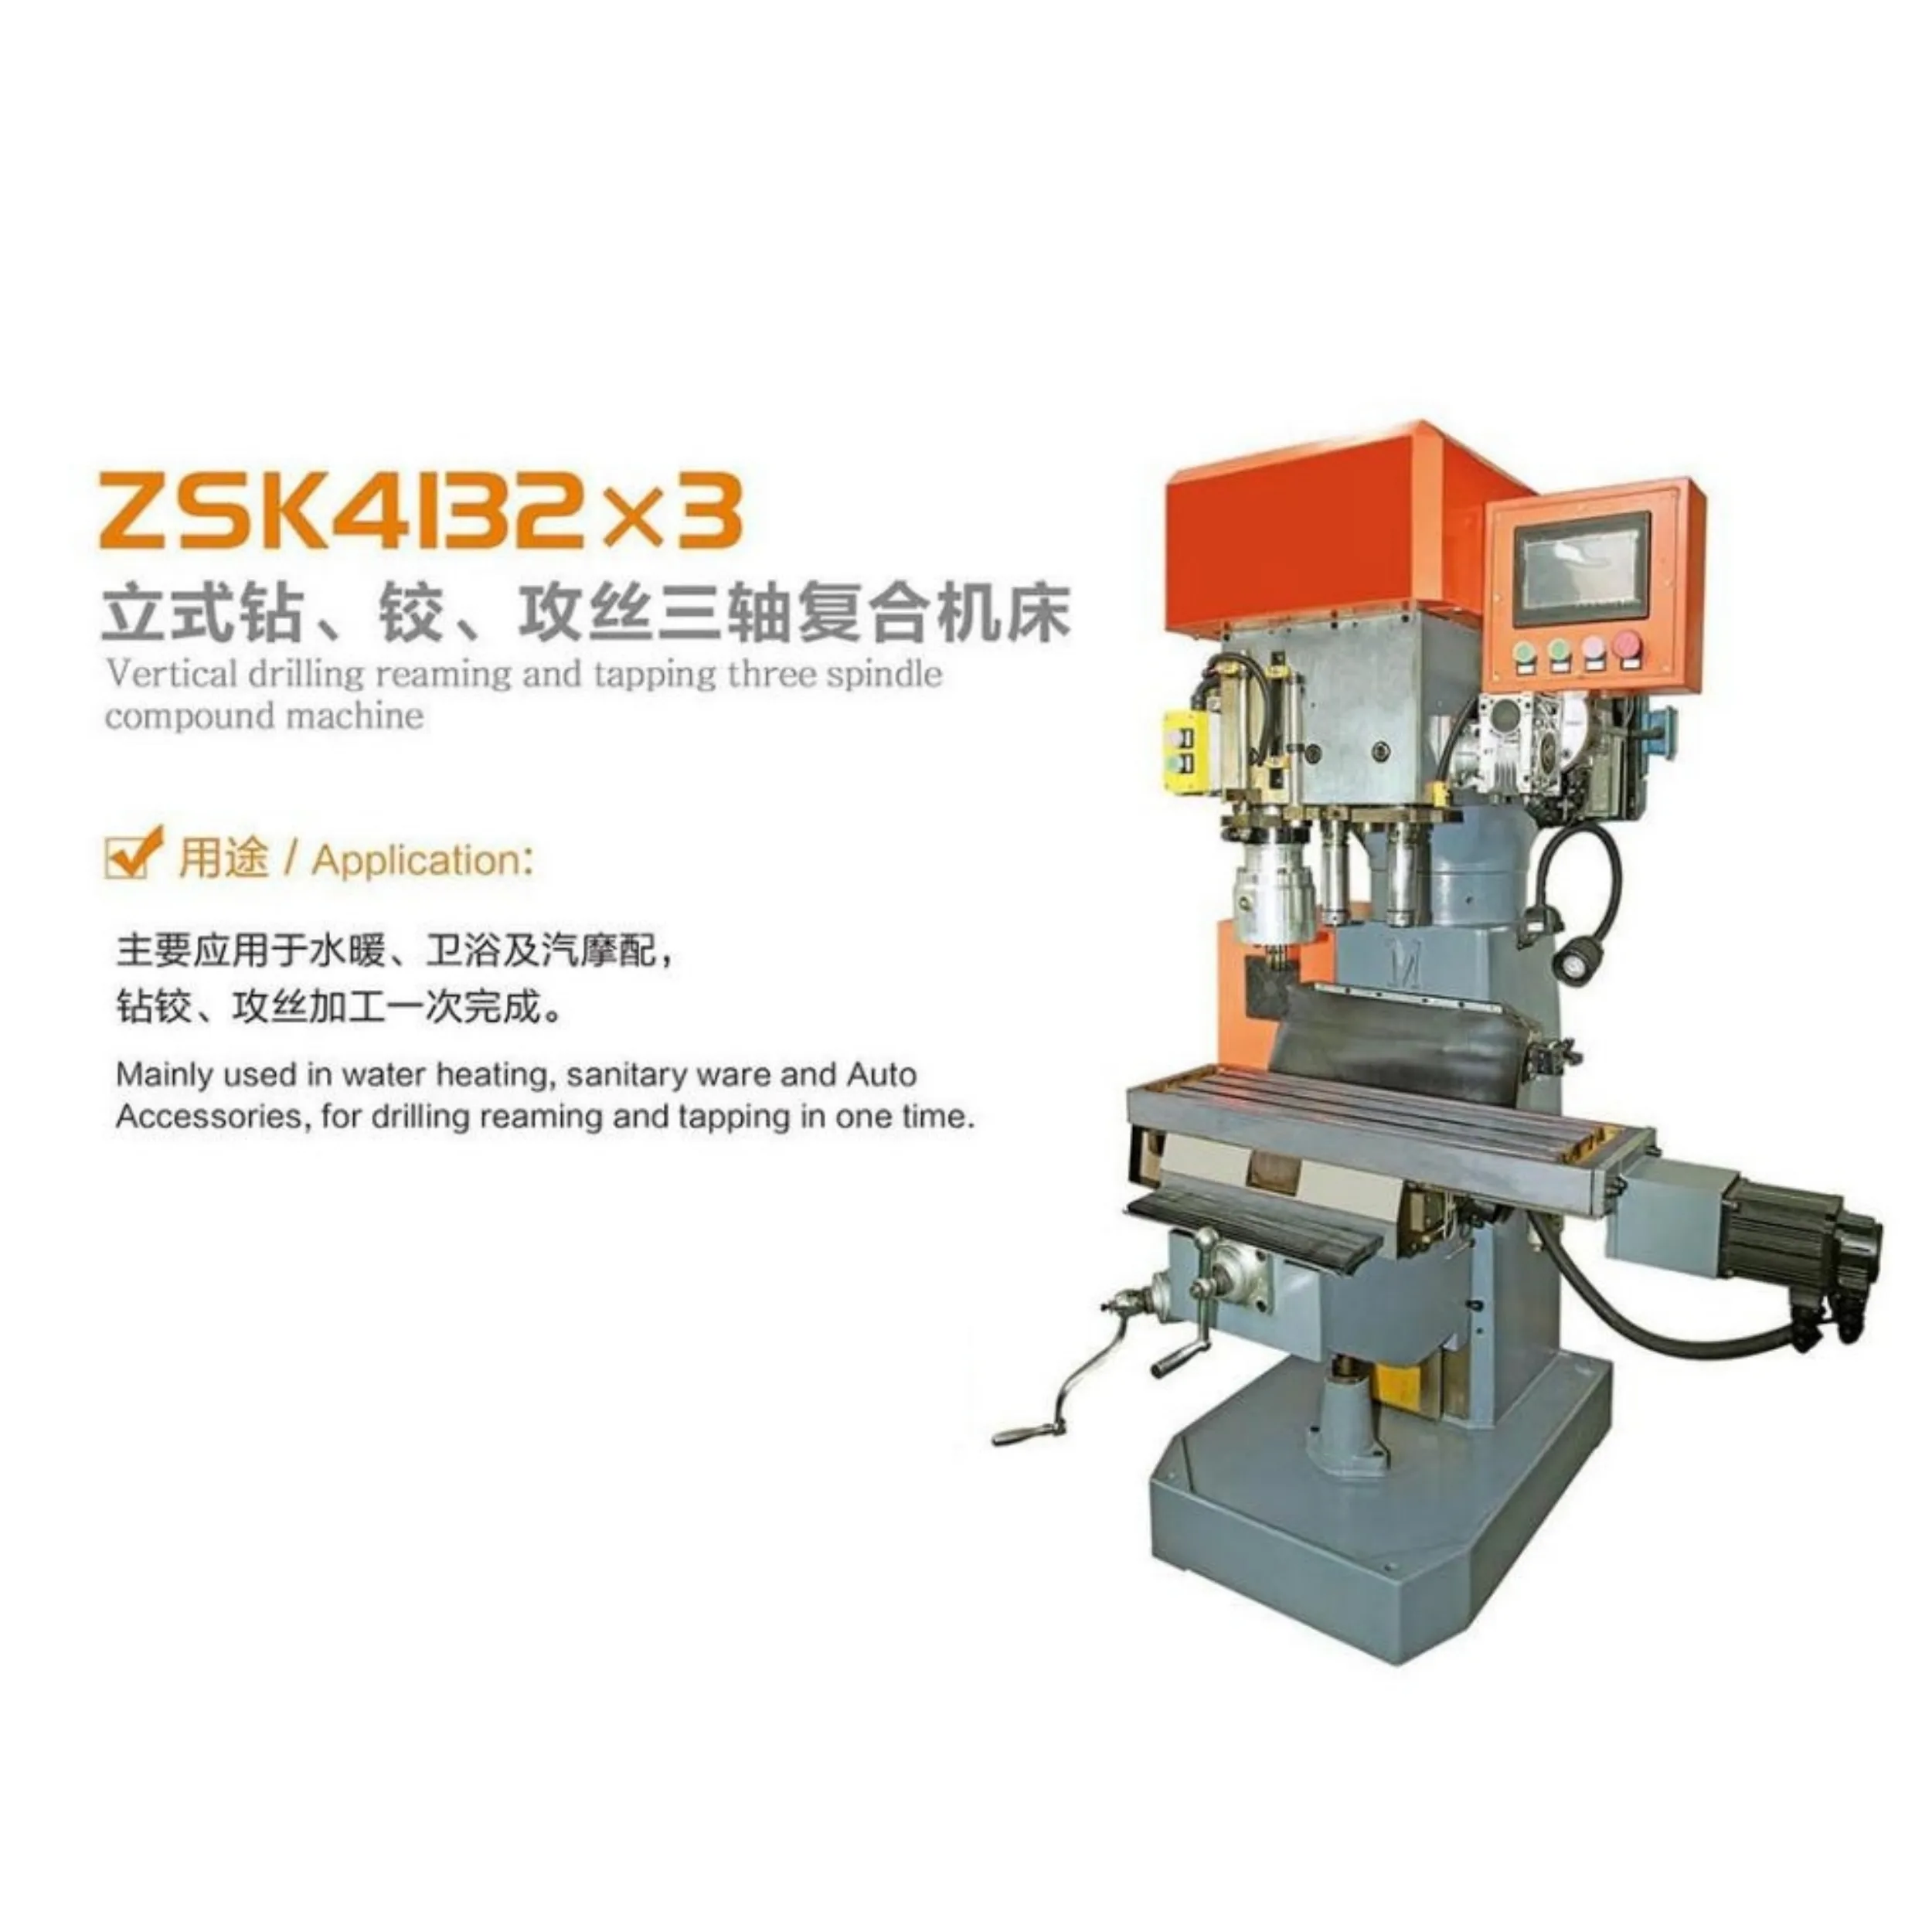 Вертикальный сверлильный станок серии ZSK, трехшпиндельный составной станок, в основном используется для смесителей, сантехники и автозапчастей